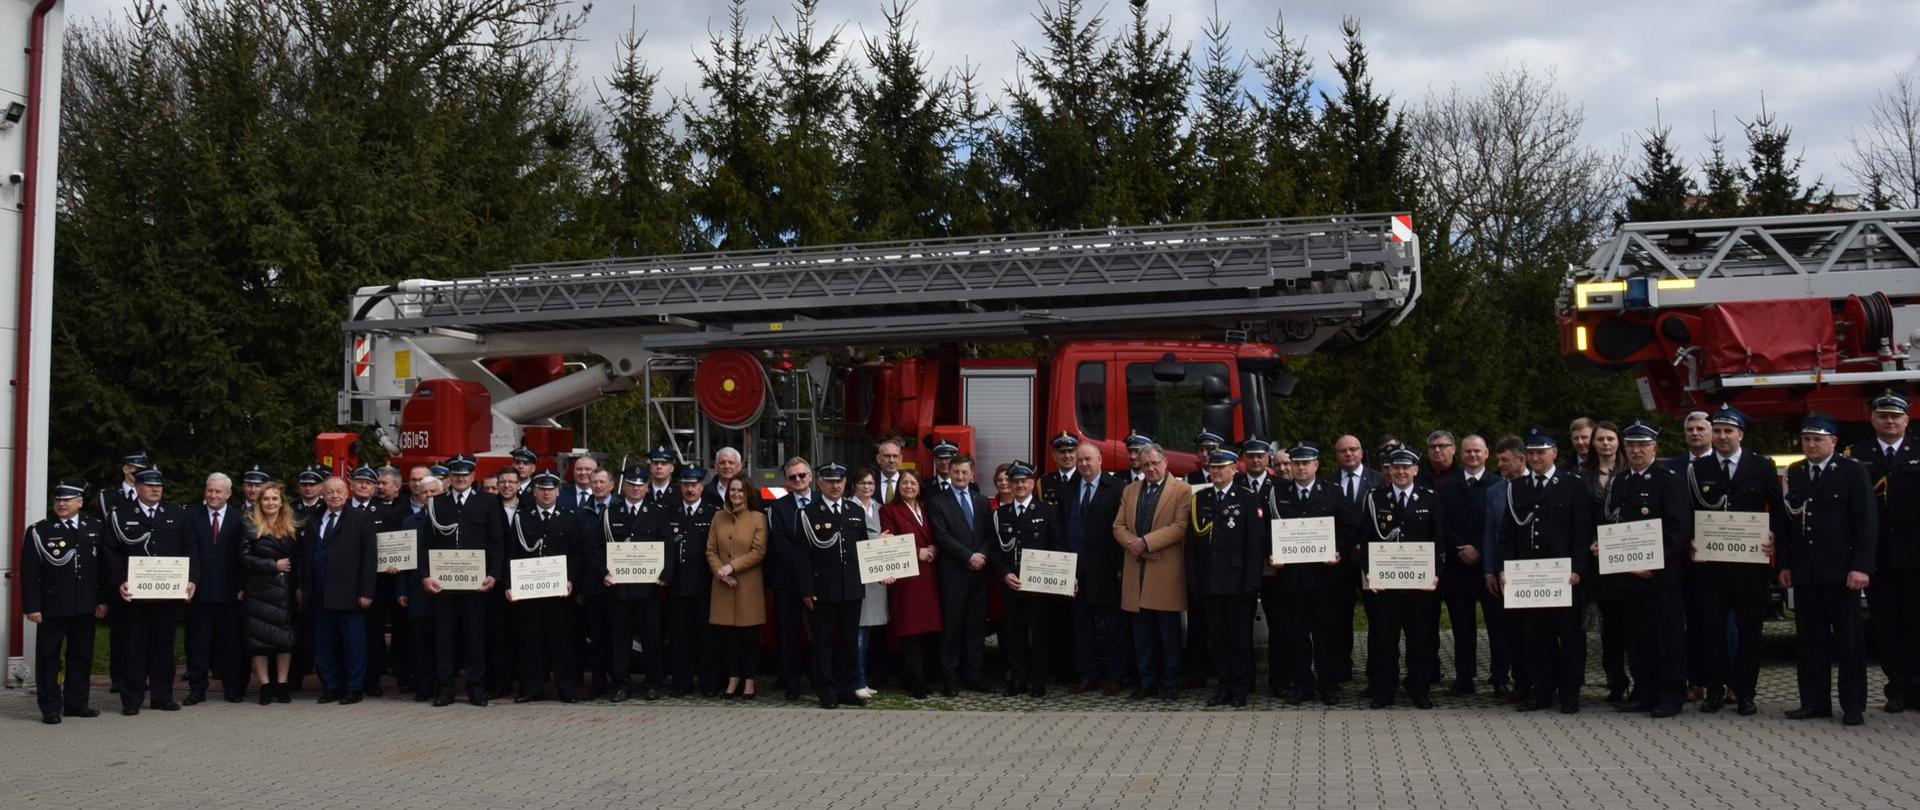 Na zdjęciu na tle samochodów pożarniczych przedstawiciele OSP oraz zaproszeni goście z wręczonymi podczas uroczystego apelu promesami